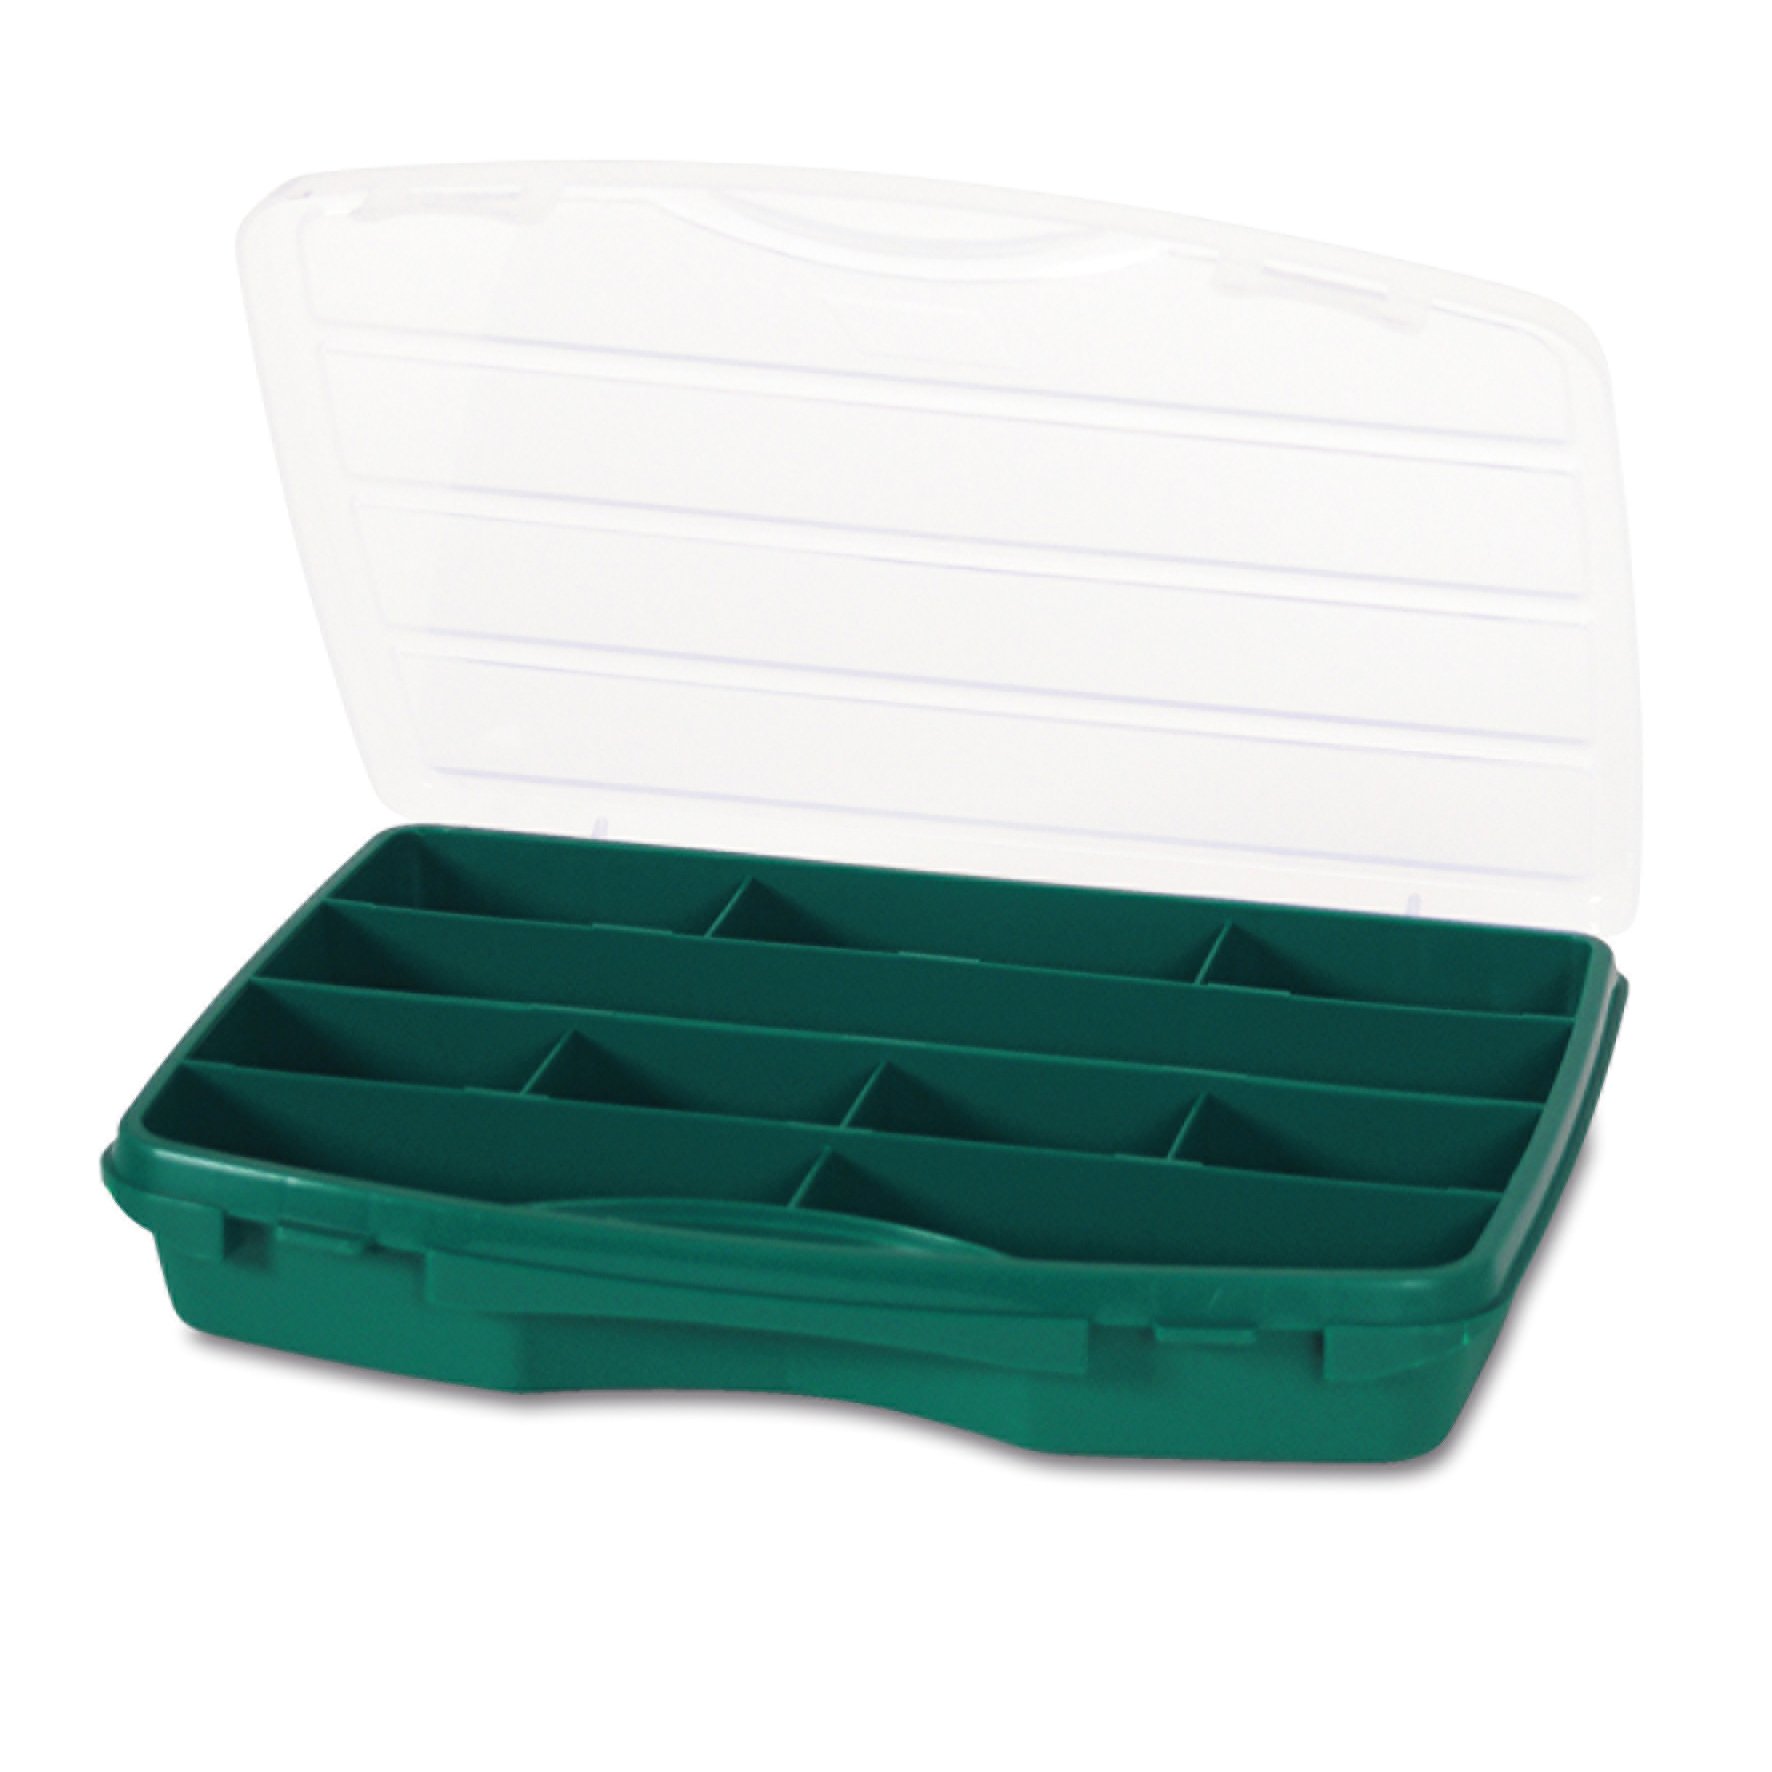 Органайзер Tayg Box 21-10 Estuche, для хранения мелких предметов, 25,6х19,2х4,2 см, зеленый (021008) - фото 1